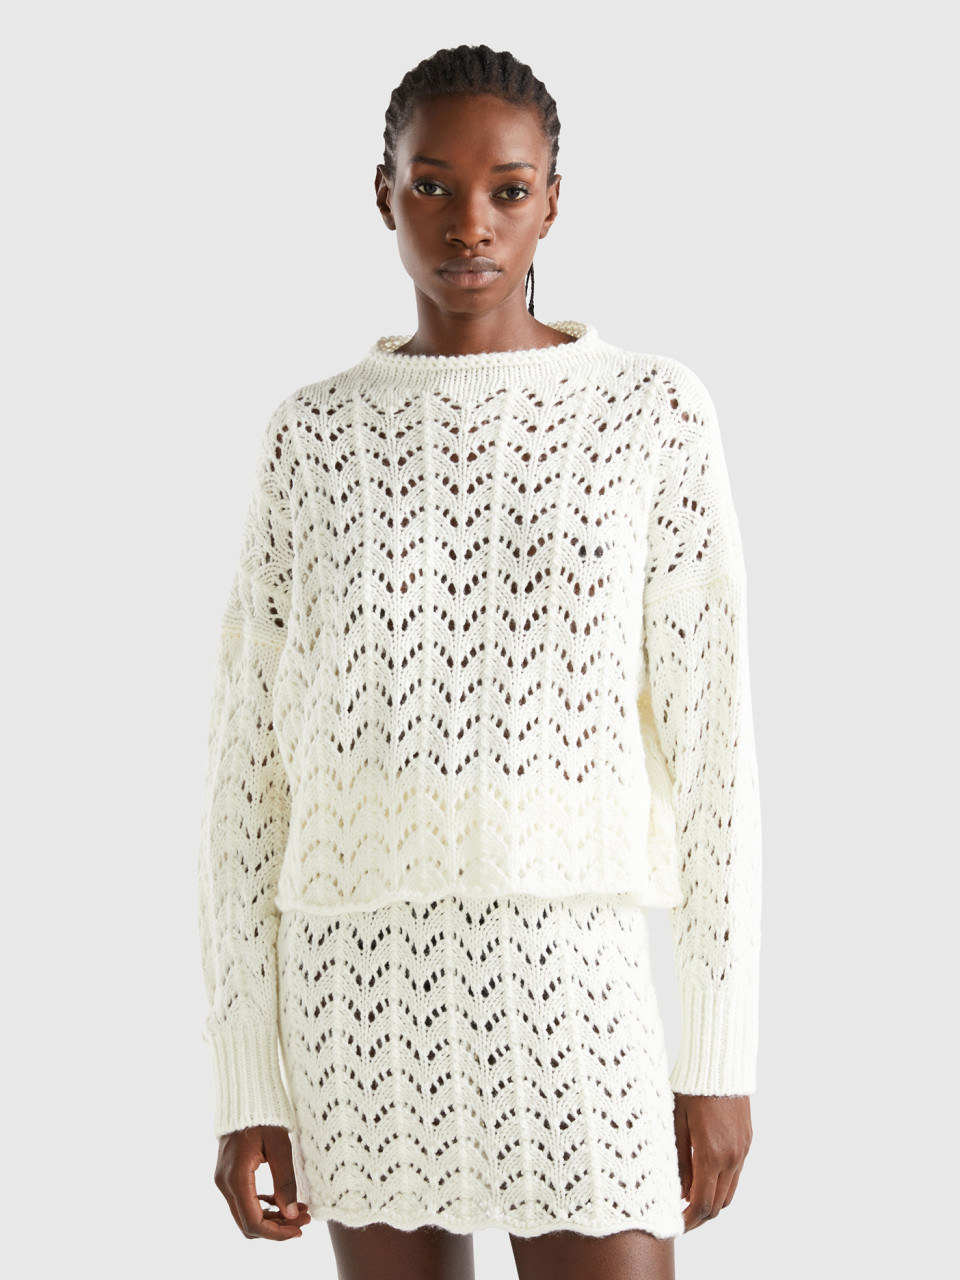 Benetton, Crochet Effect Sweater, Creamy White, Women